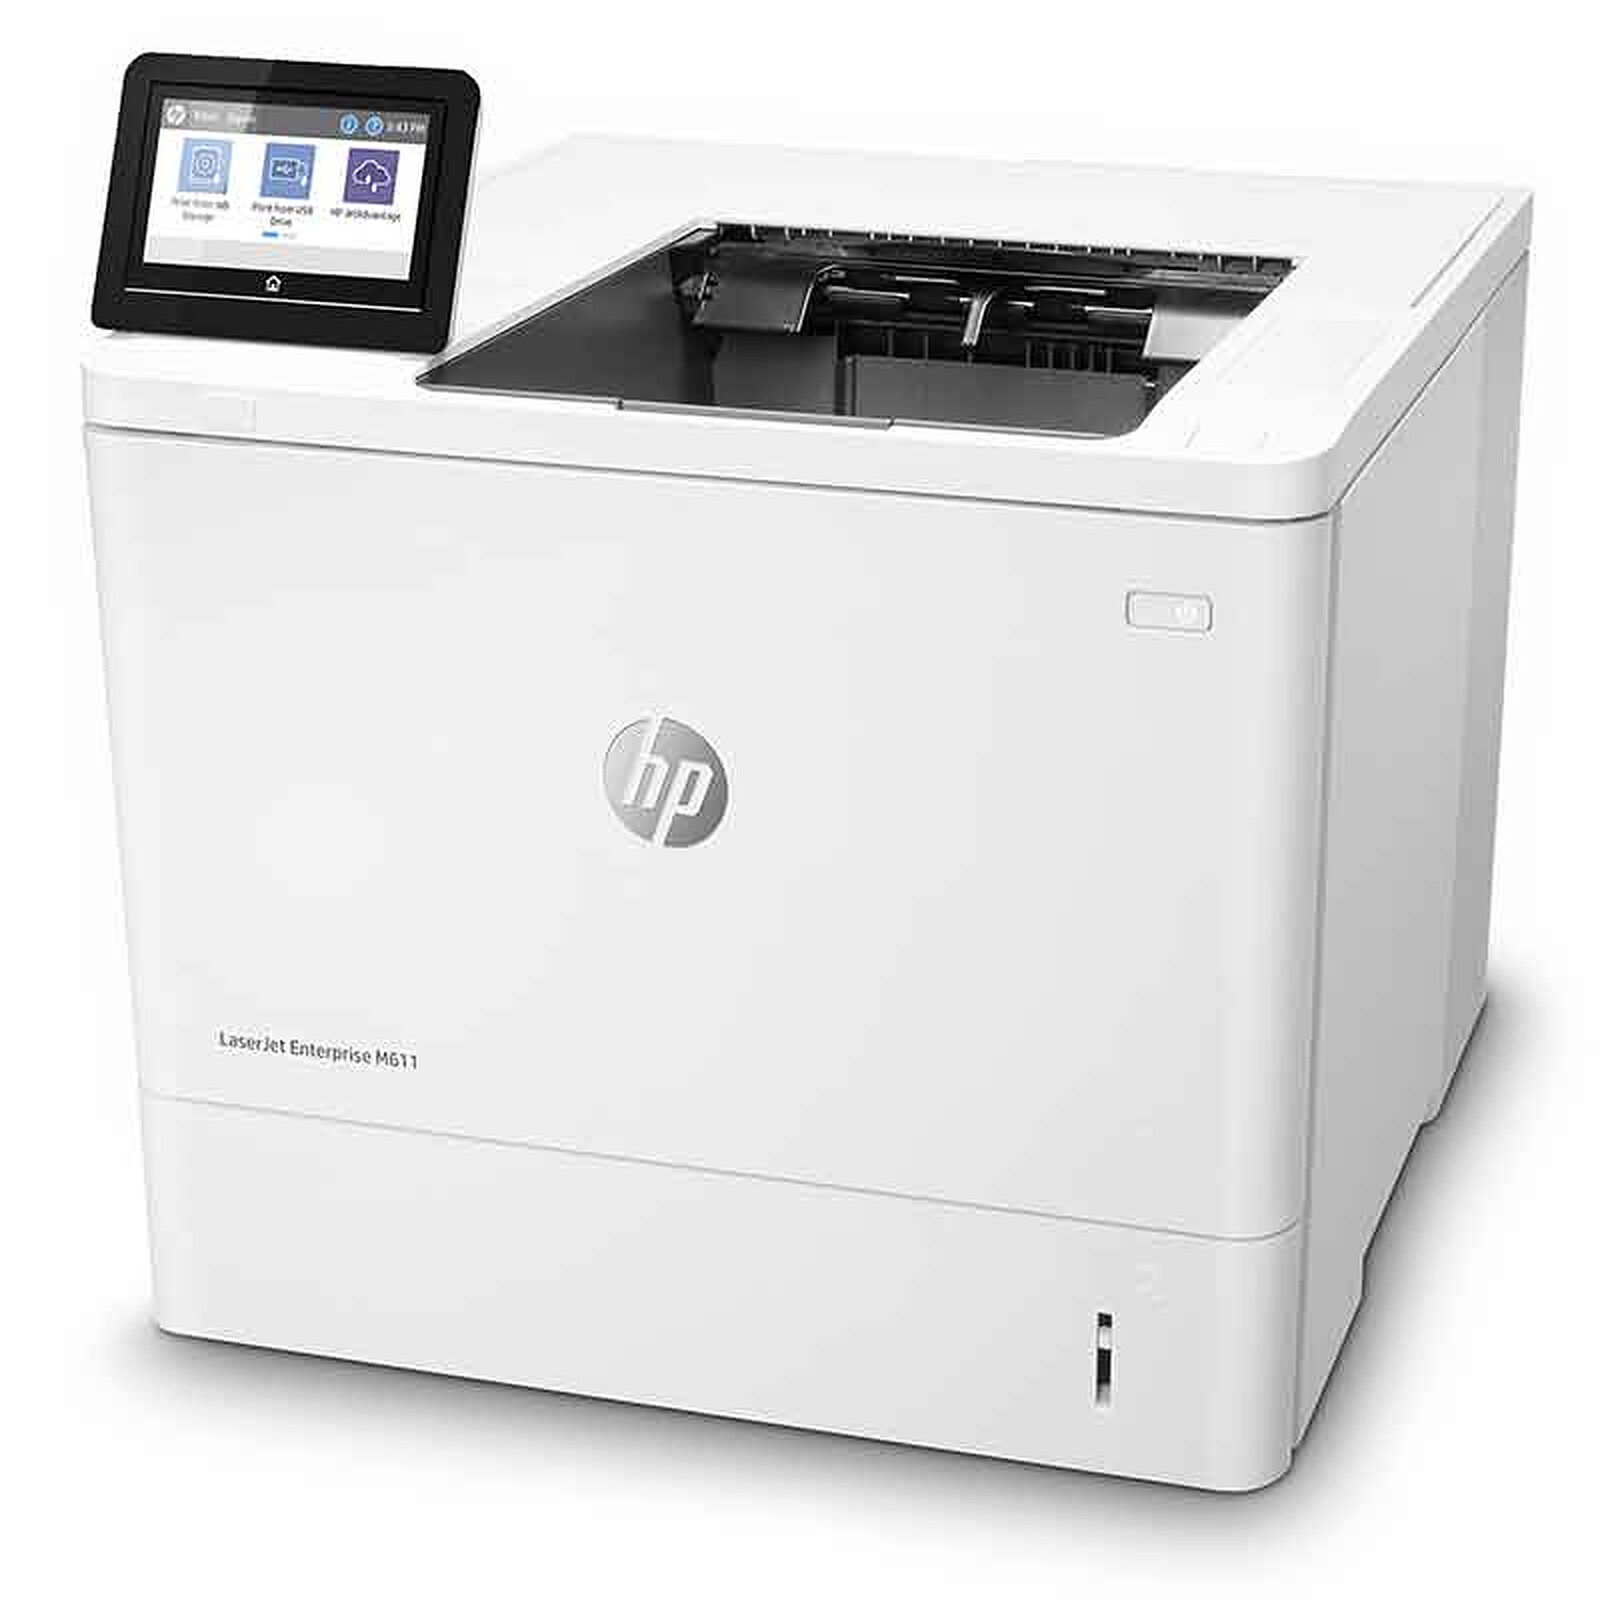 HP Color Laser 150nw - Imprimante laser - Garantie 3 ans LDLC